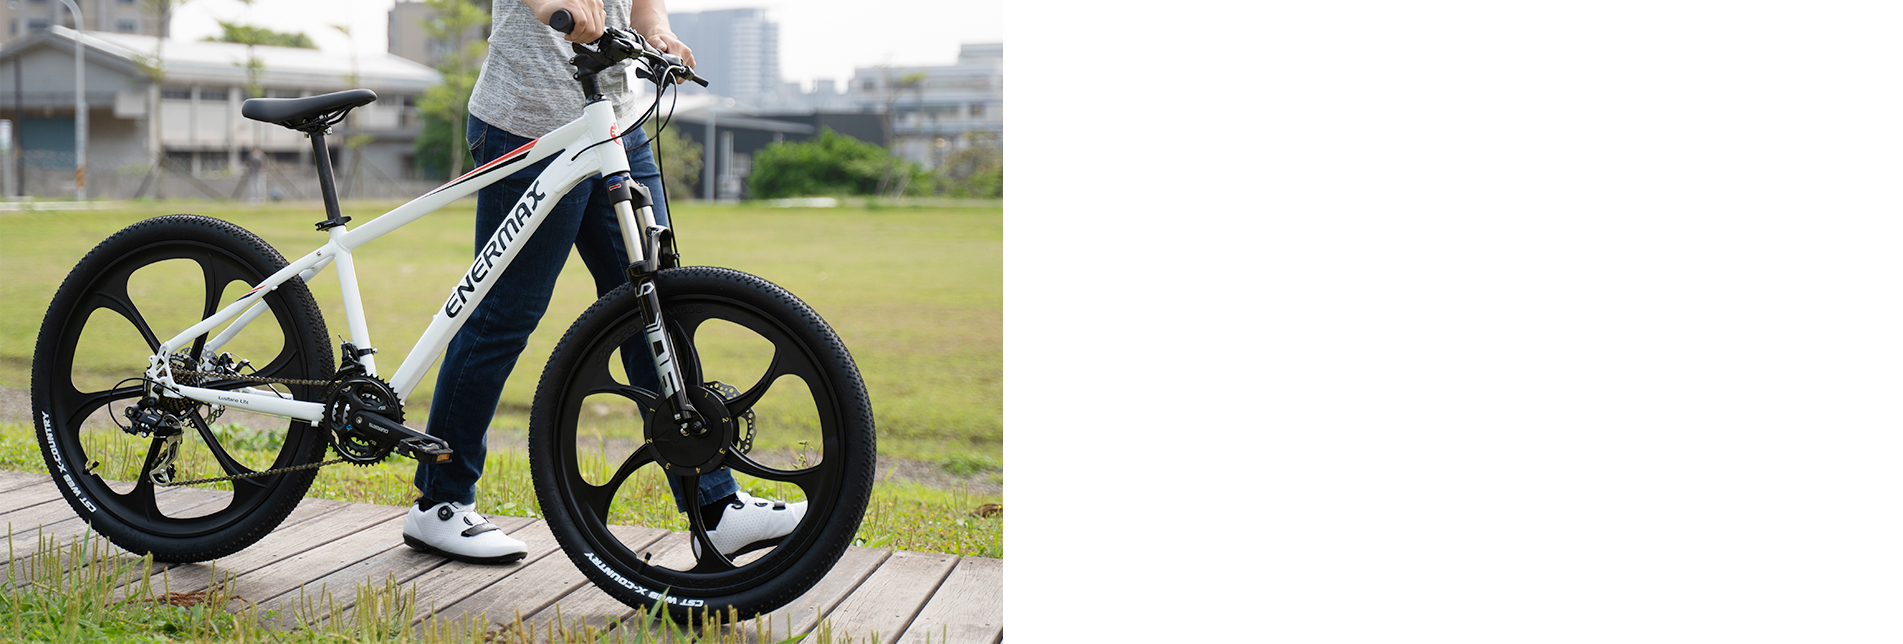 騎一台不一樣的自行車Lusitano Lite 露西倈雙功能打浪自行車